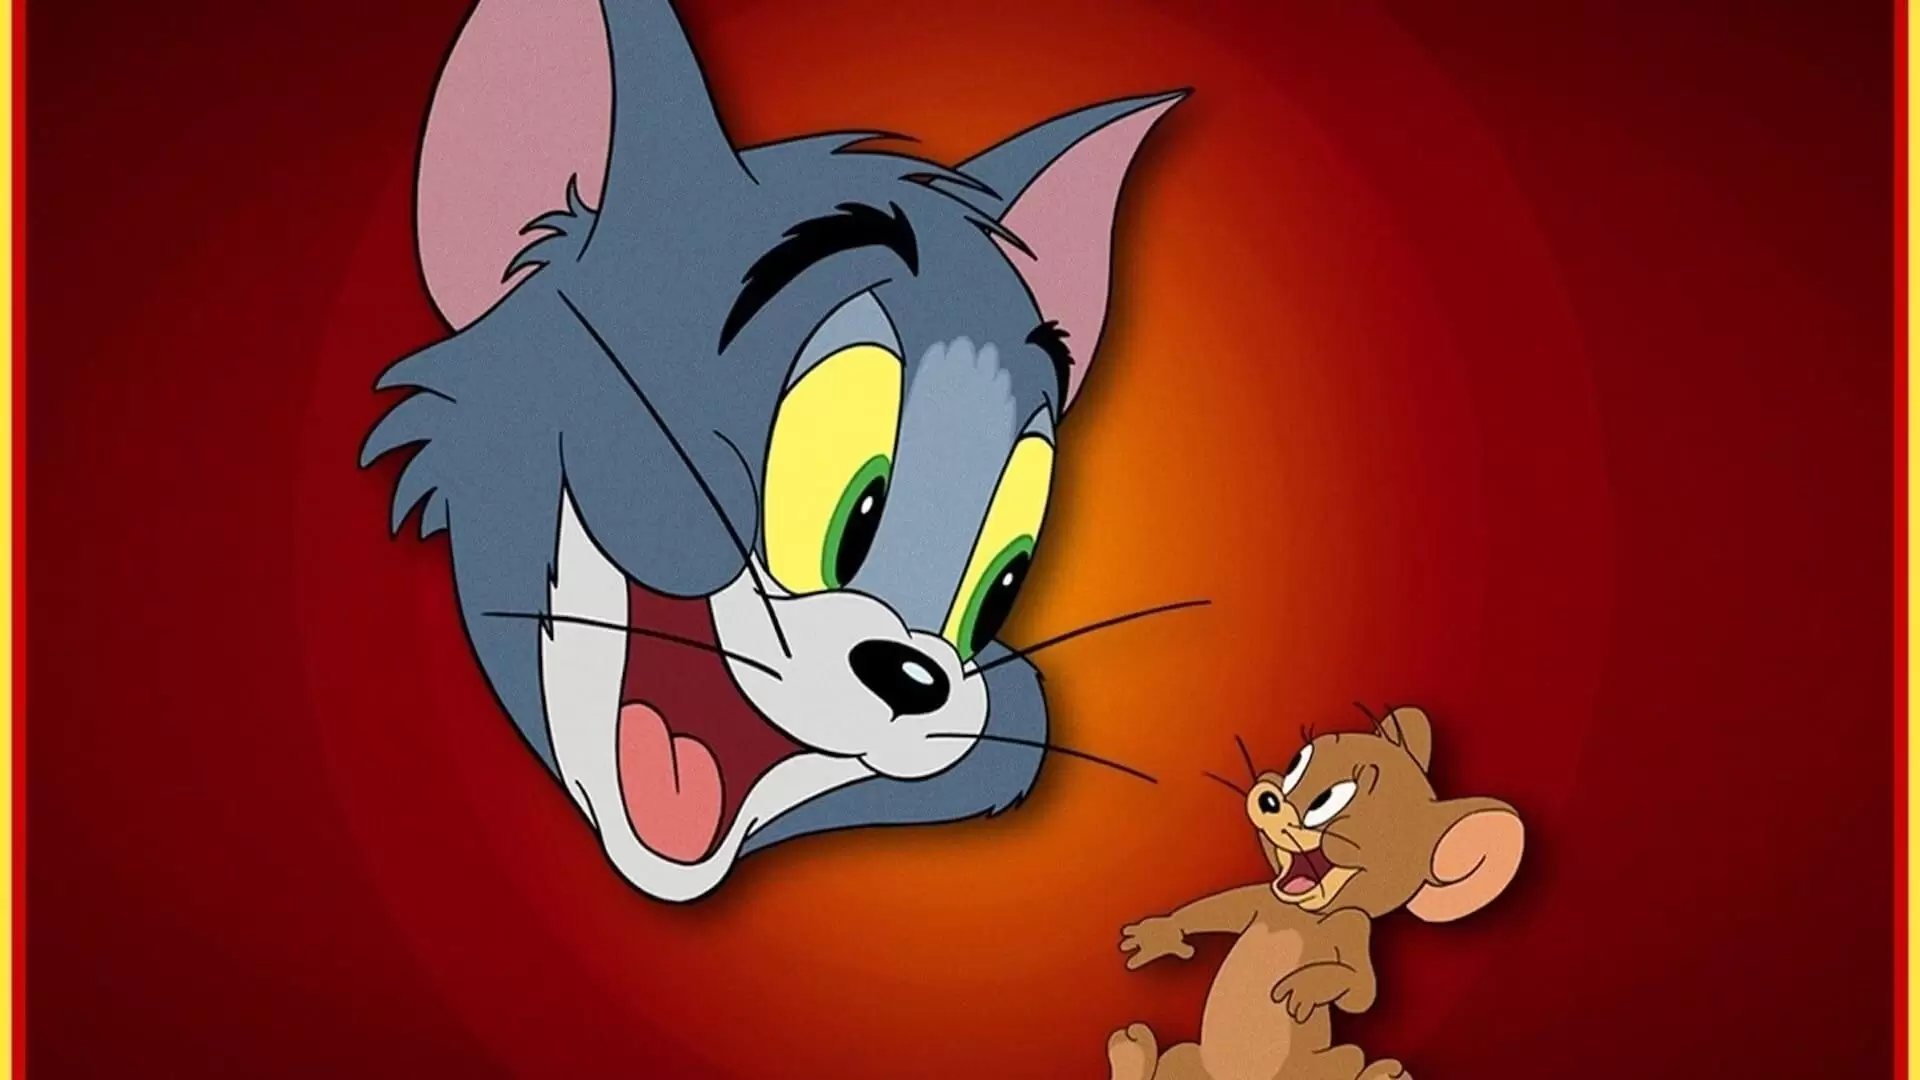 دانلود انیمیشن Tom and Jerry Collection 1940 (مجموعه تام و جری) با تماشای آنلاین